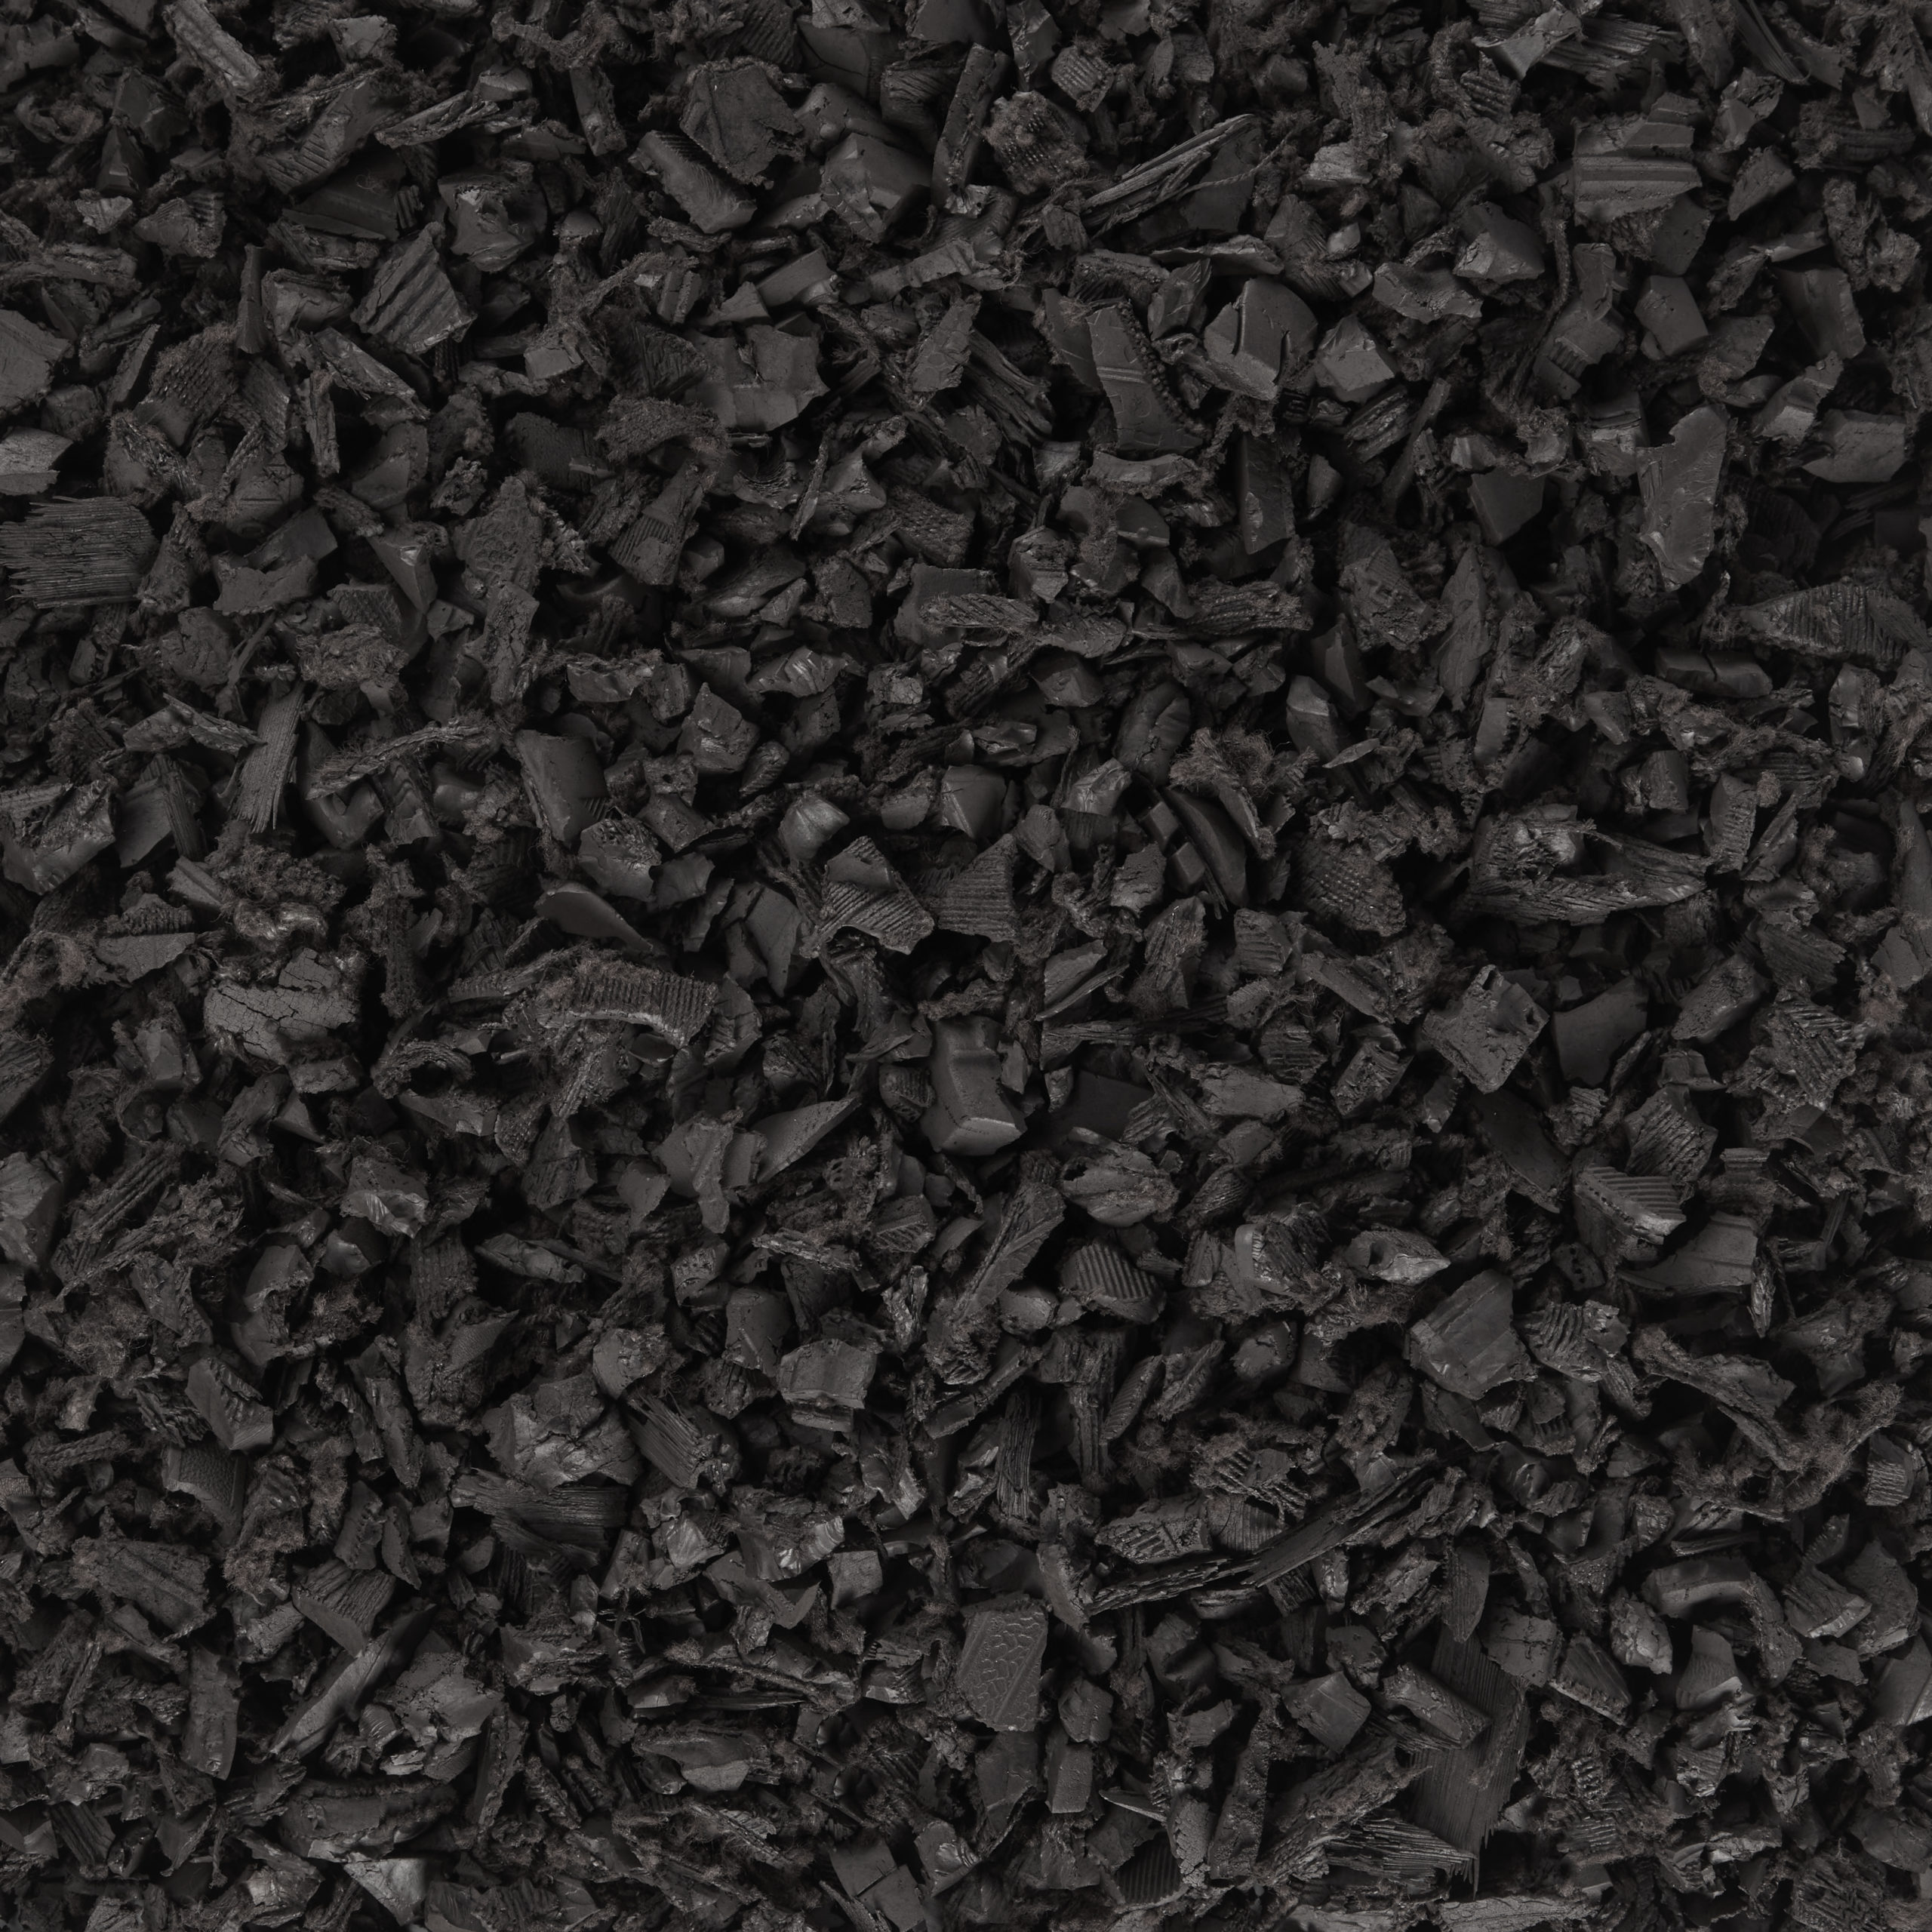 Espresso Black Rubber Mulch